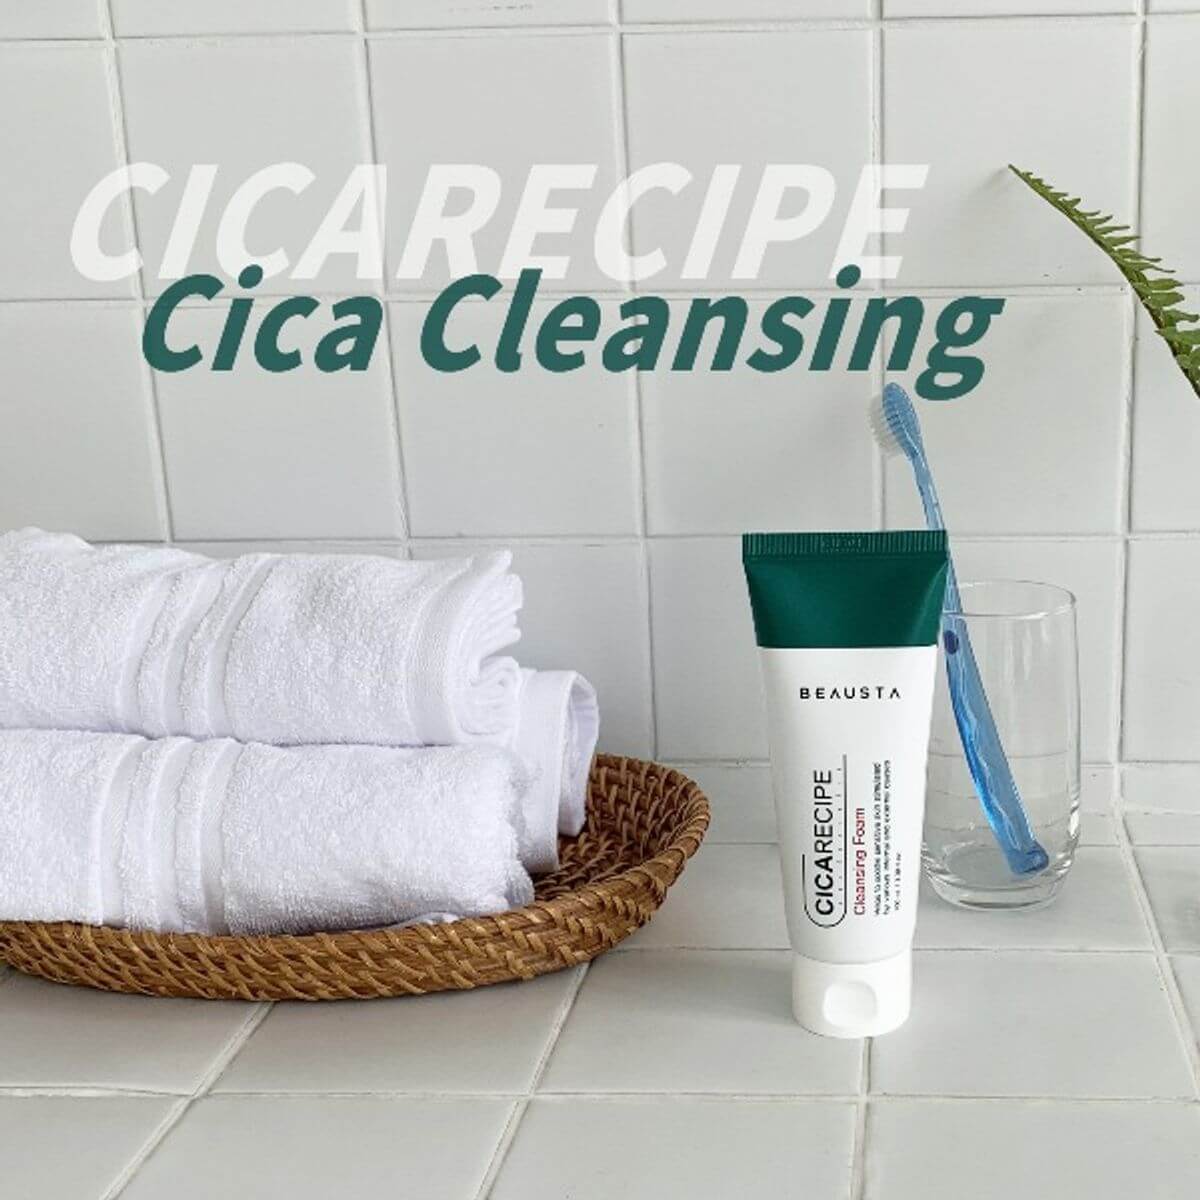 Cicarecipe Cleansing Foam [Beausta. (1)